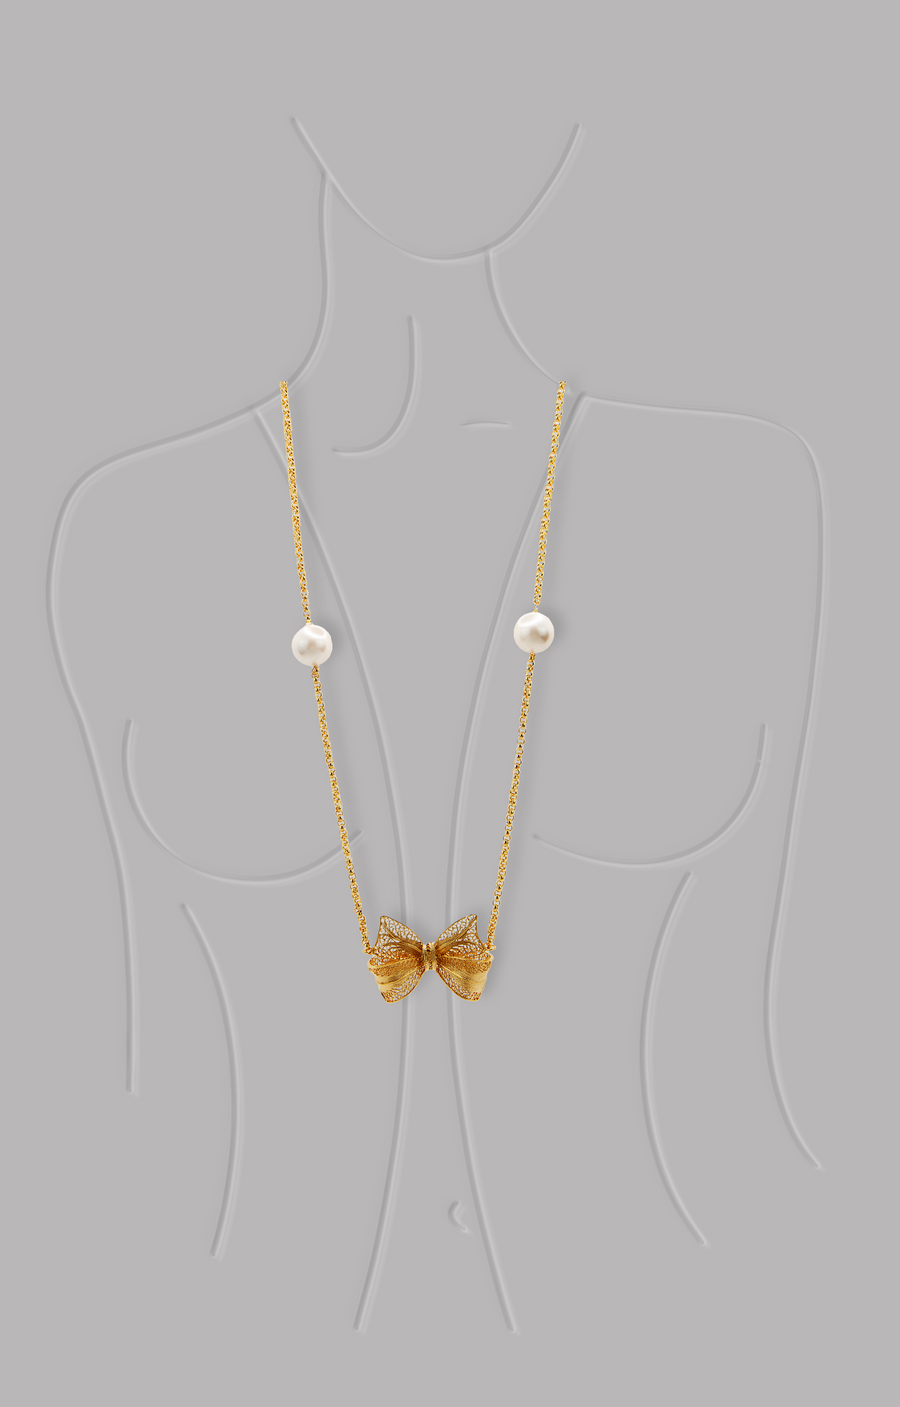 Long Lace Bow Pendant Necklace -Long Gold Pendant Necklace